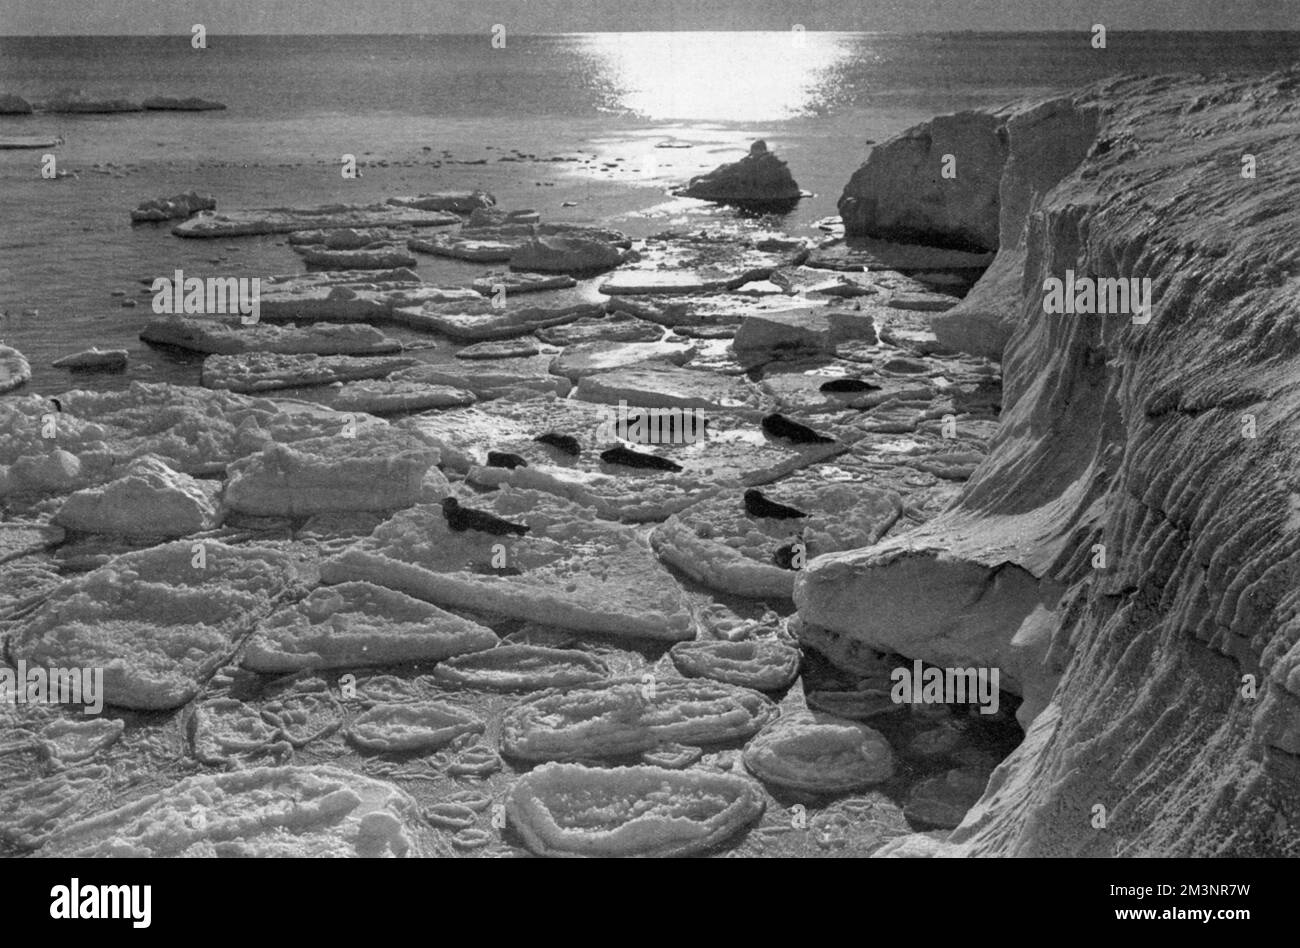 Des phoques qui se sont enferrés sur de la glace à crêpes nouvellement formée au large de Cape Evans, capturés par le photographe Herbert Ponting lors de l'expédition polaire malheureuse de Scott au pôle Sud, 1910 - 1912. Date: 1913 Banque D'Images